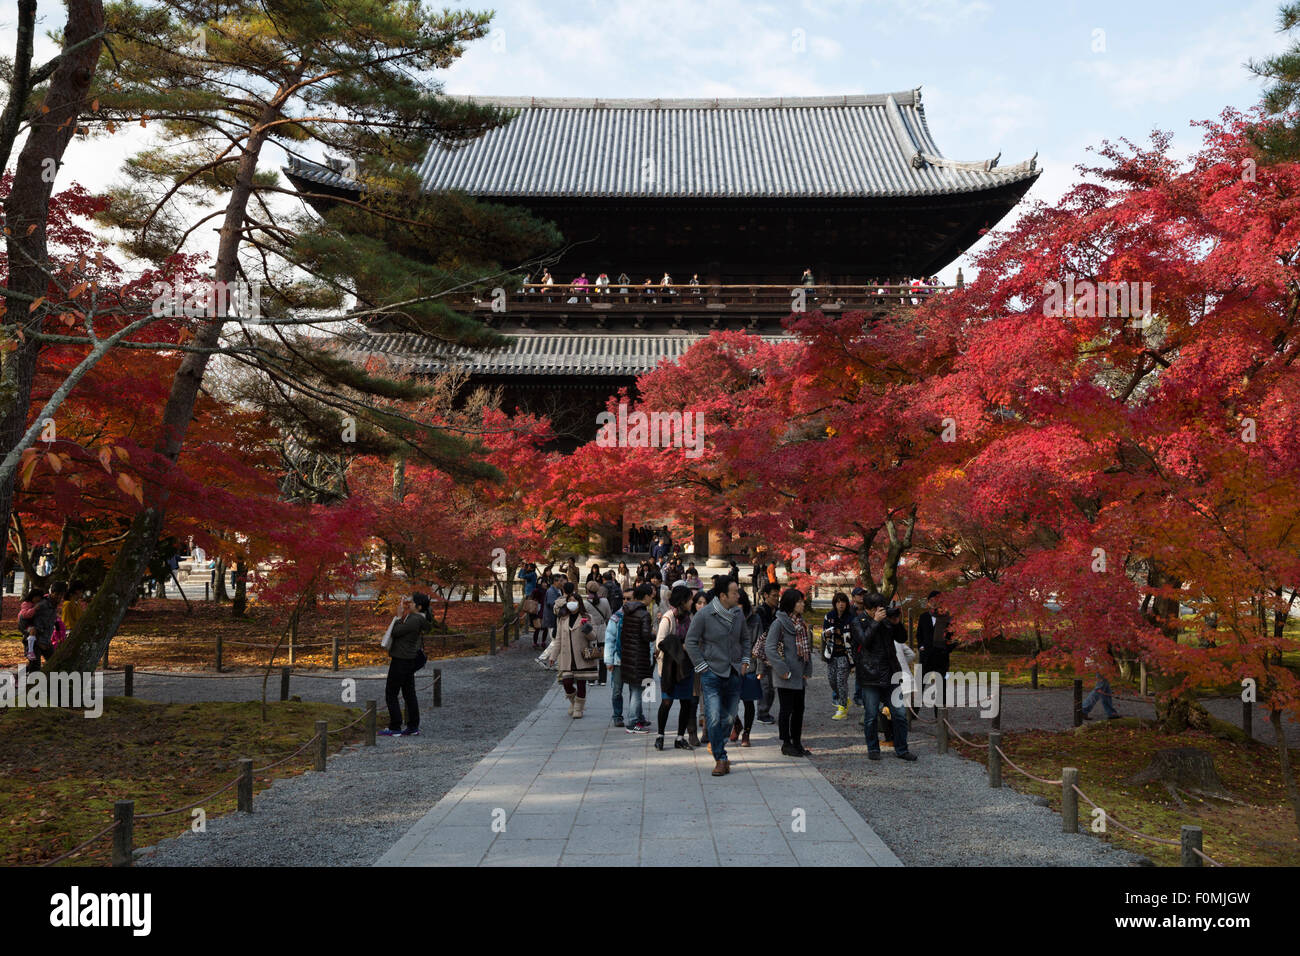 San-mon gate, Nanzen-ji (Buddhist Temple), Northern Higashiyama, Kyoto, Japan, Asia Stock Photo